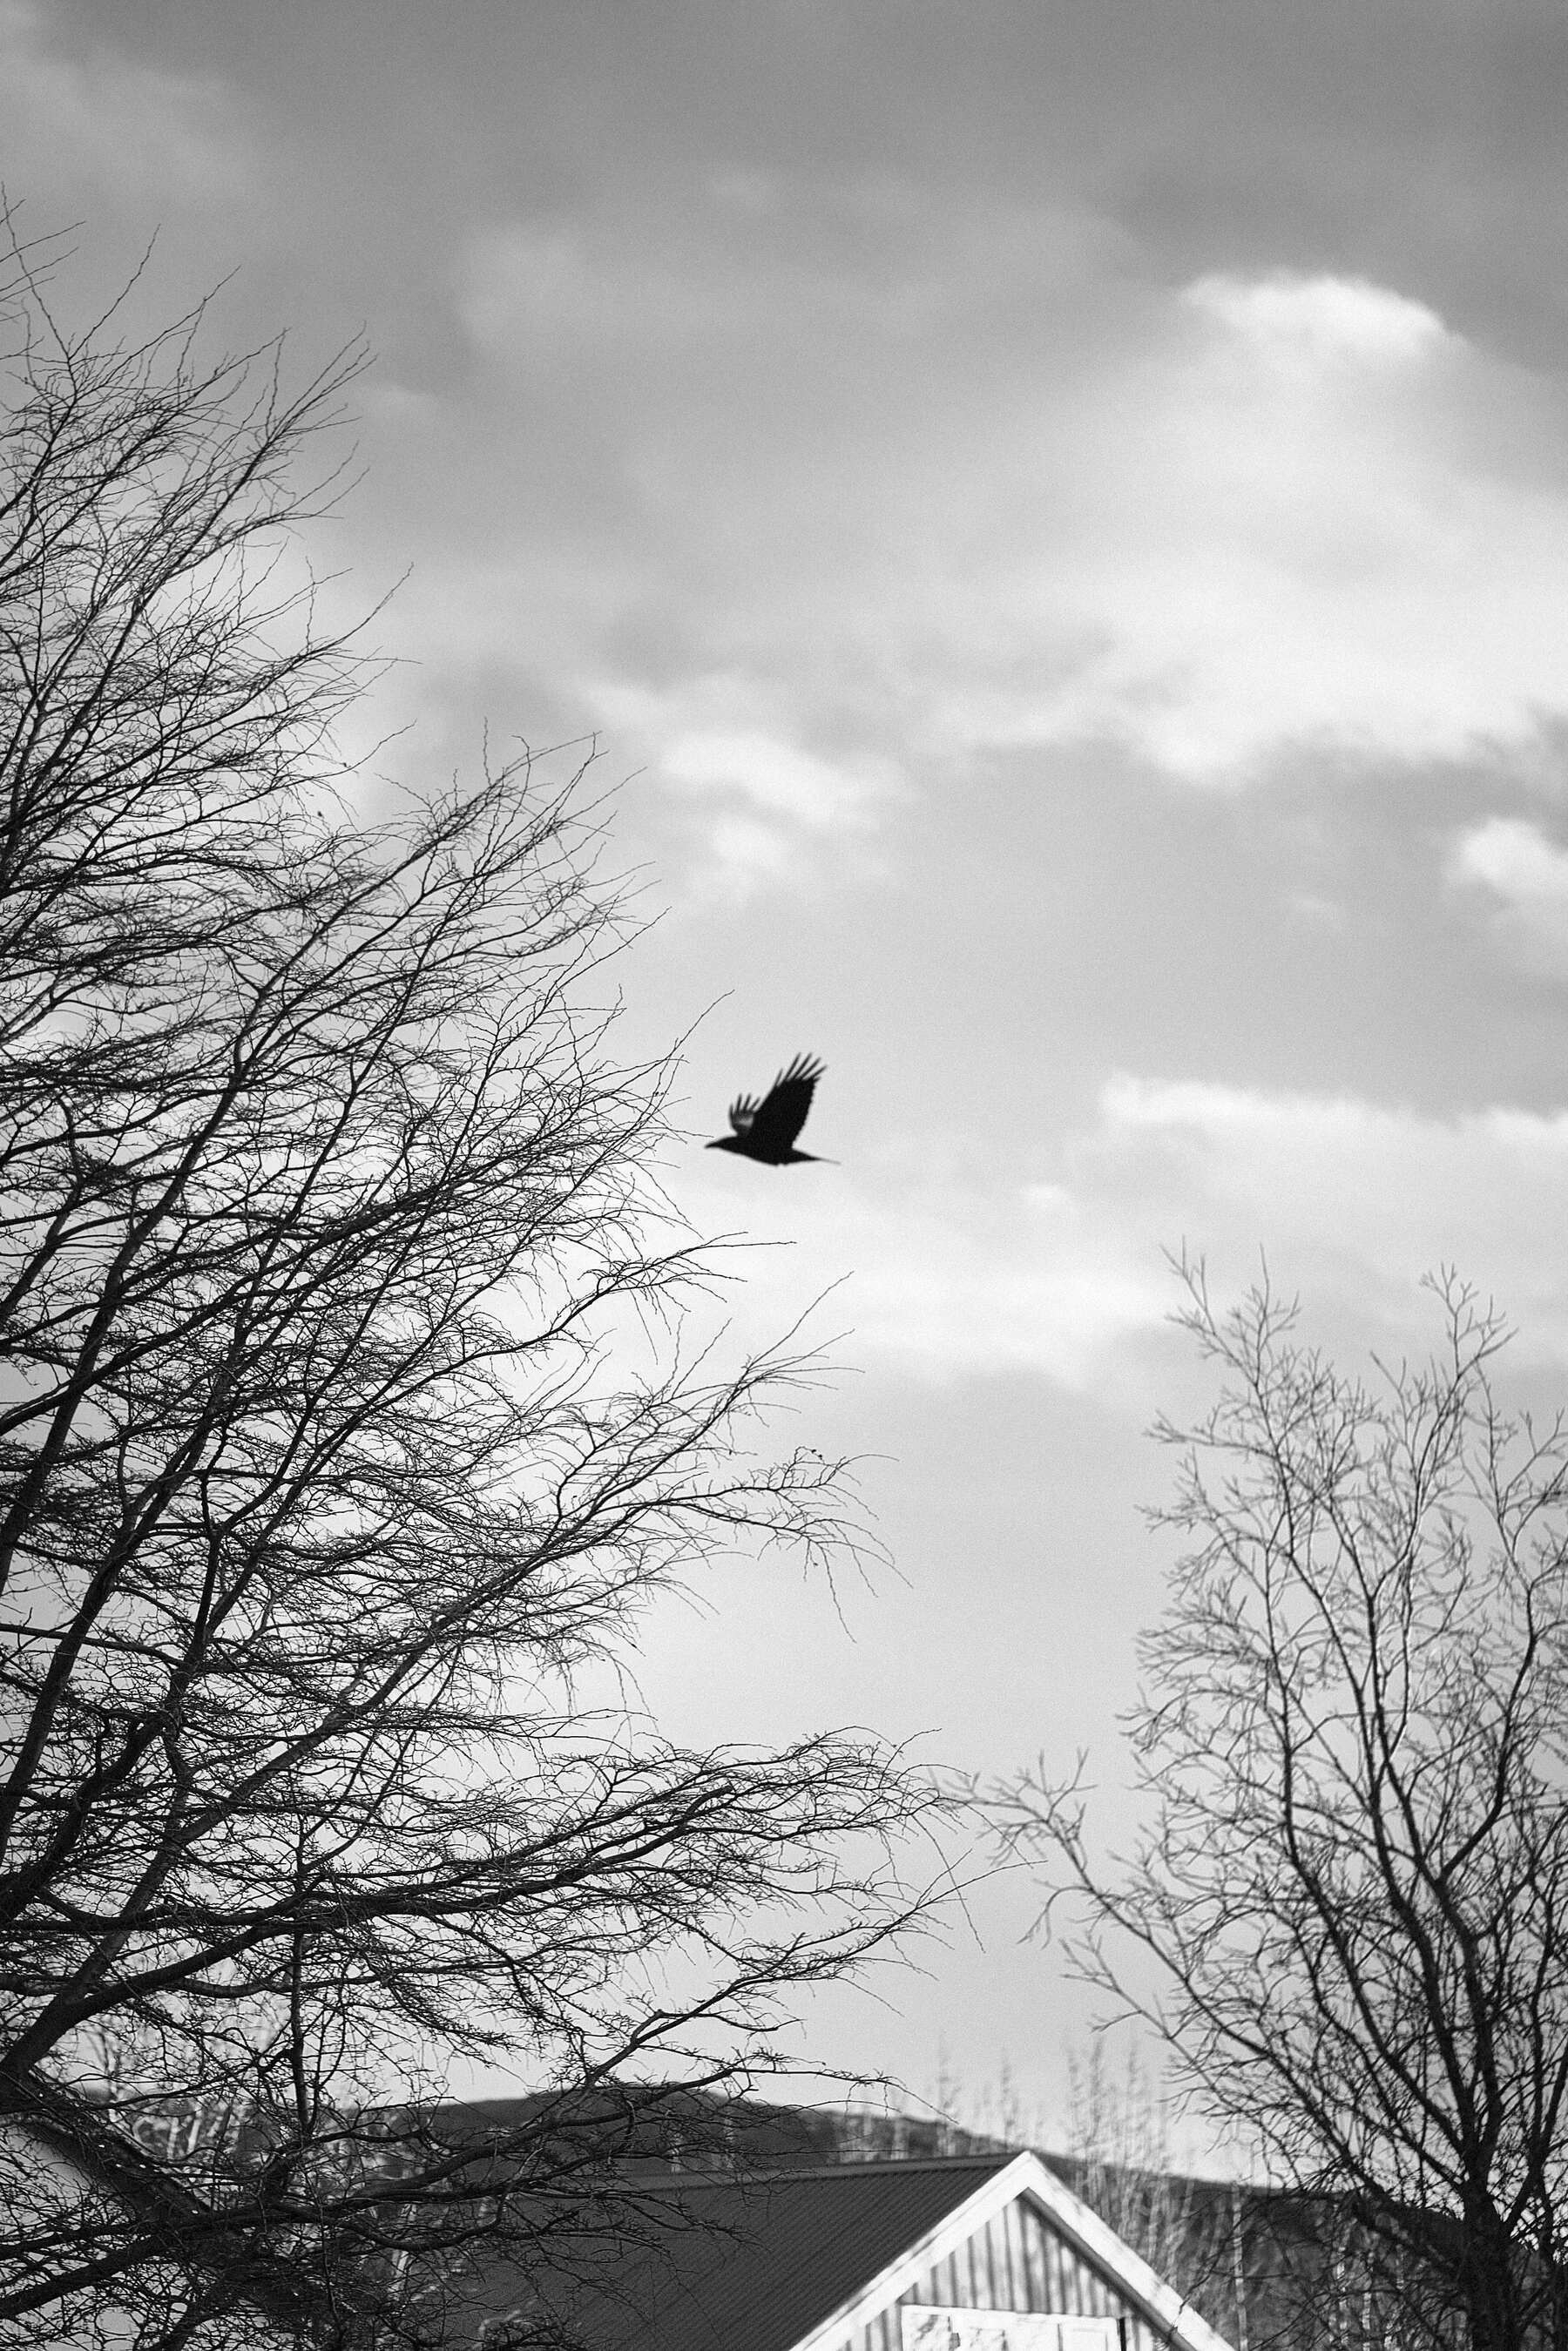 Raven flying between trees